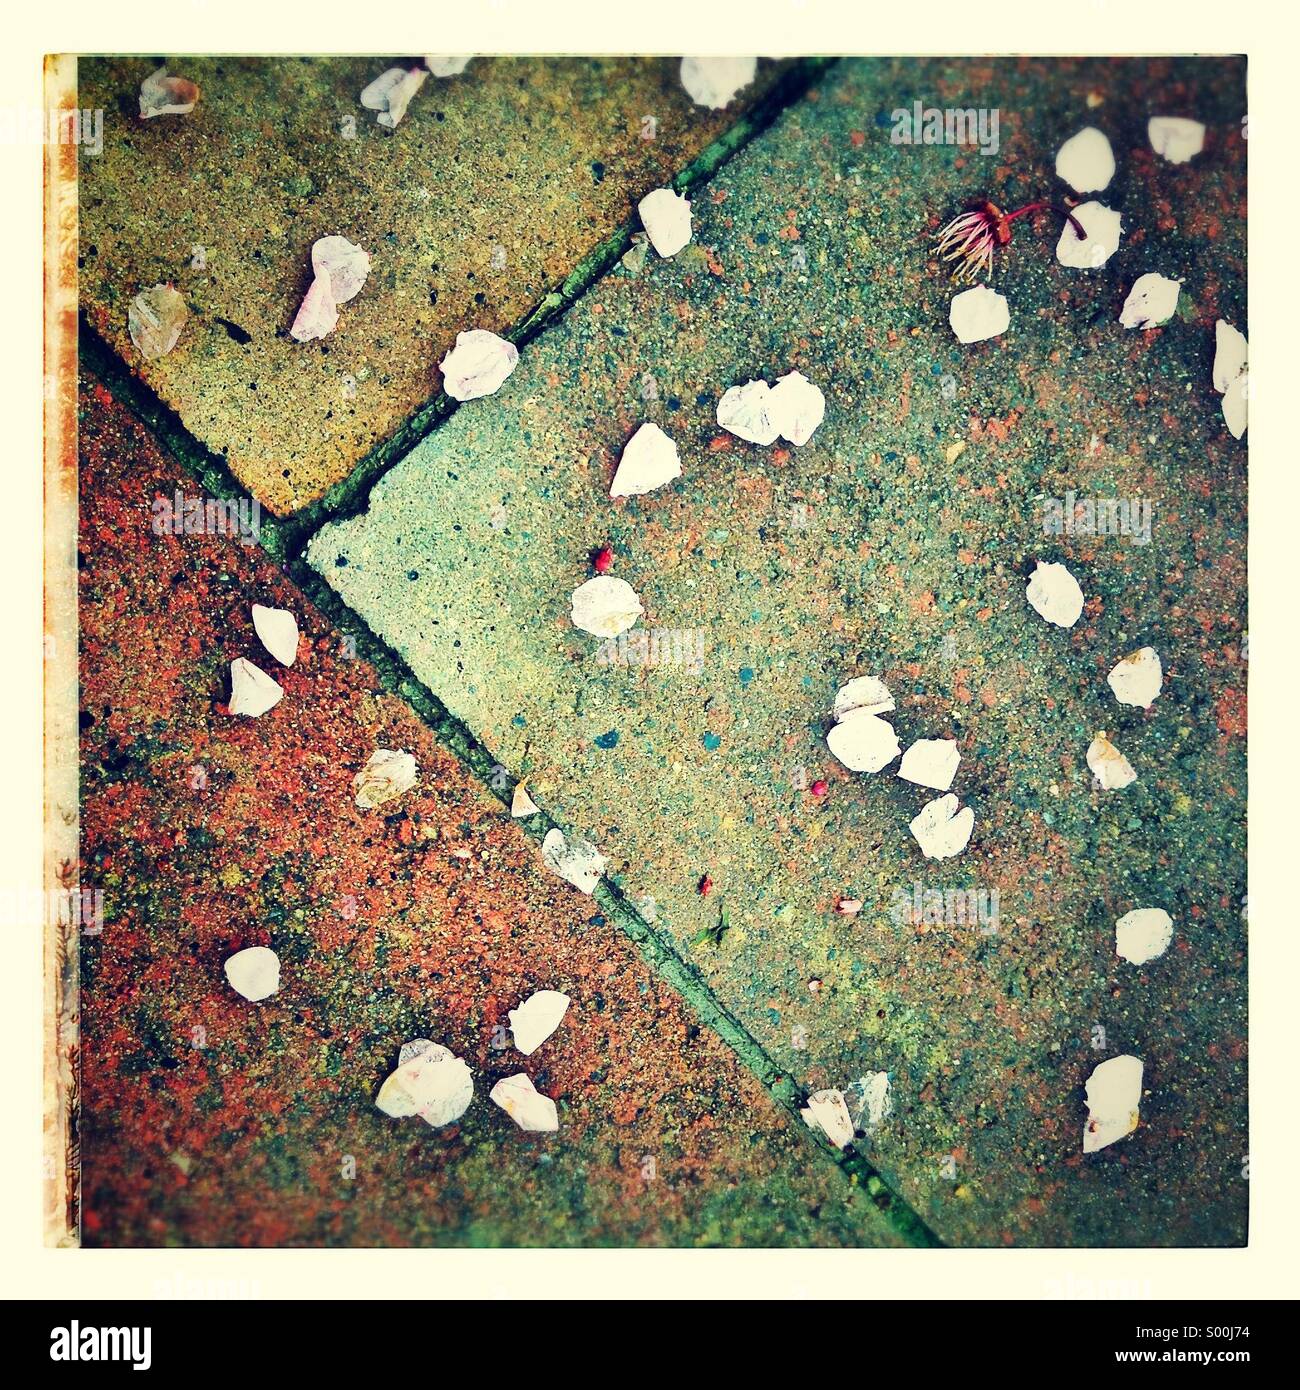 Konfetti auf einem nassen Bürgersteig Stockfoto